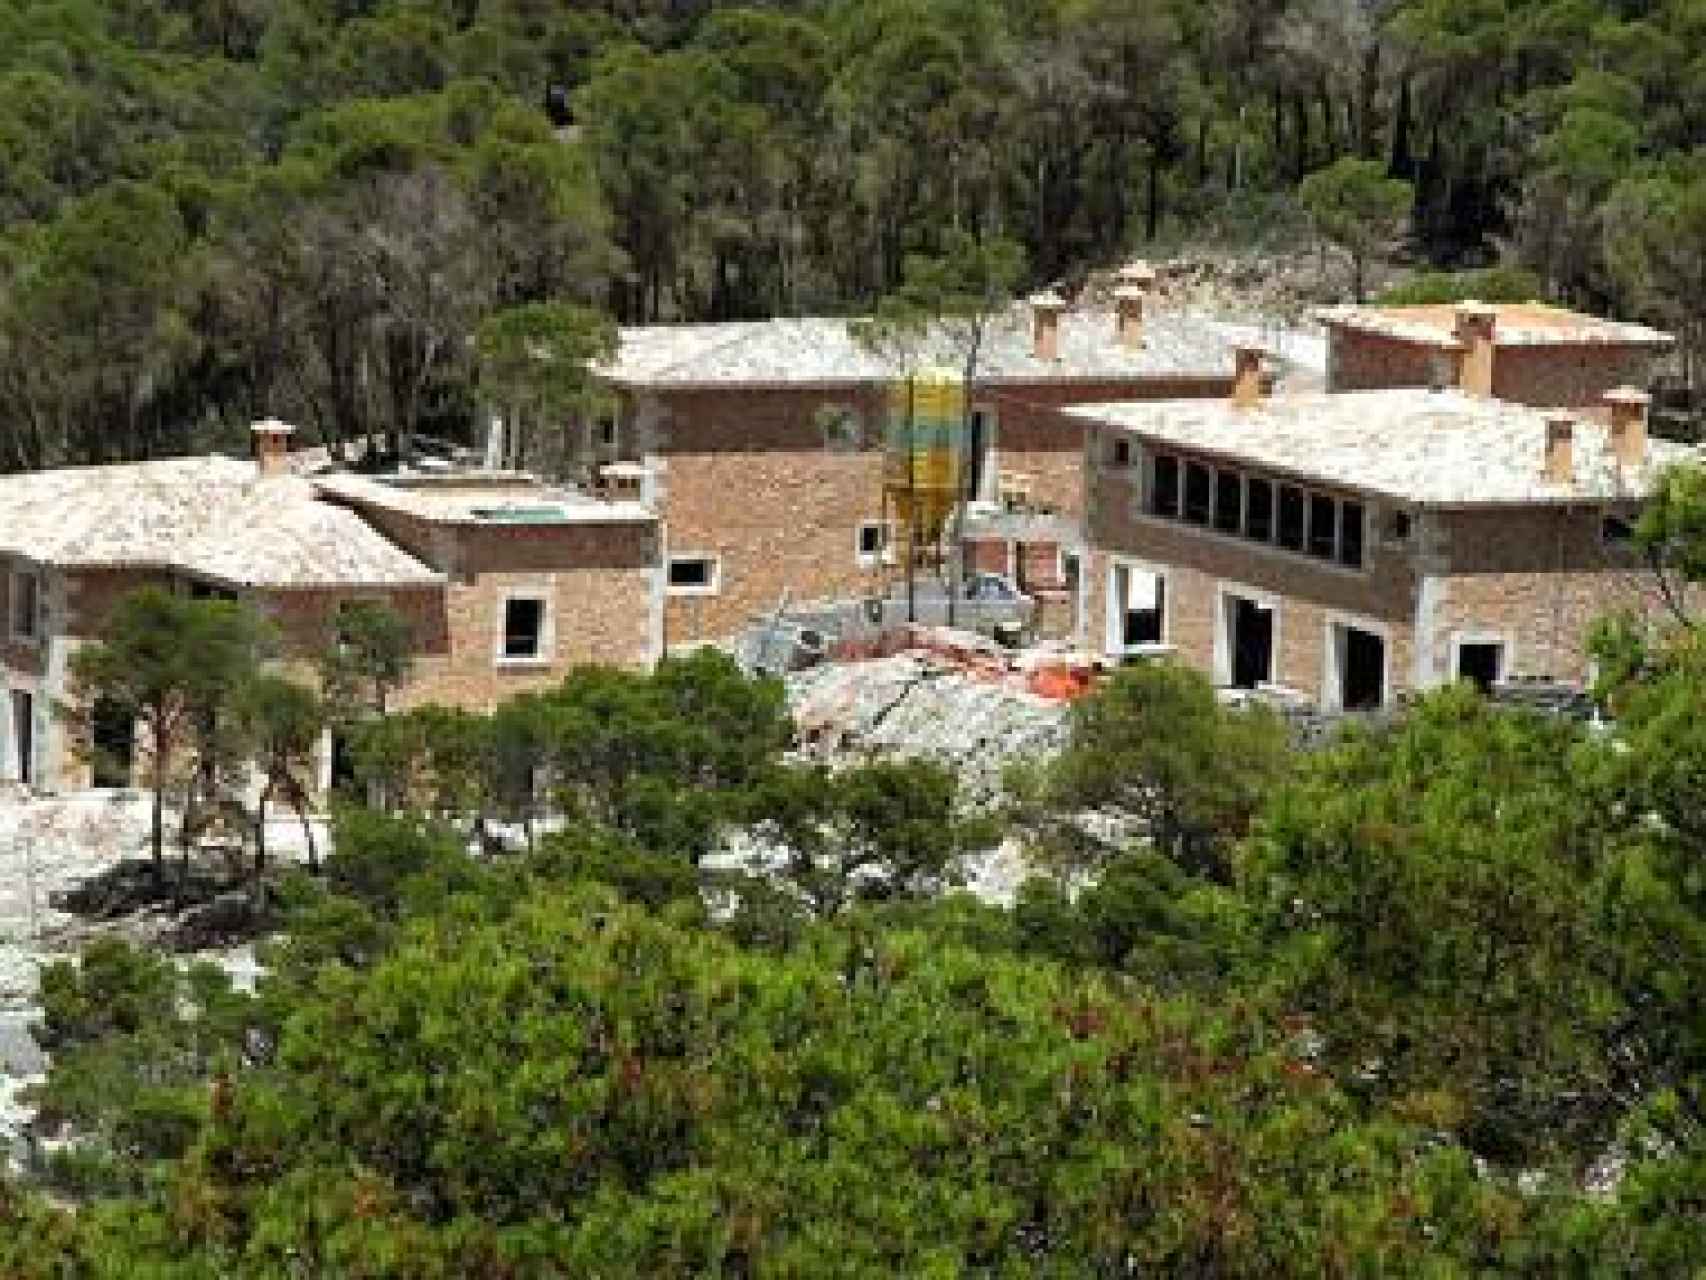 Vista de la casa de Shiffer en Mallorca, construida hace unos años.